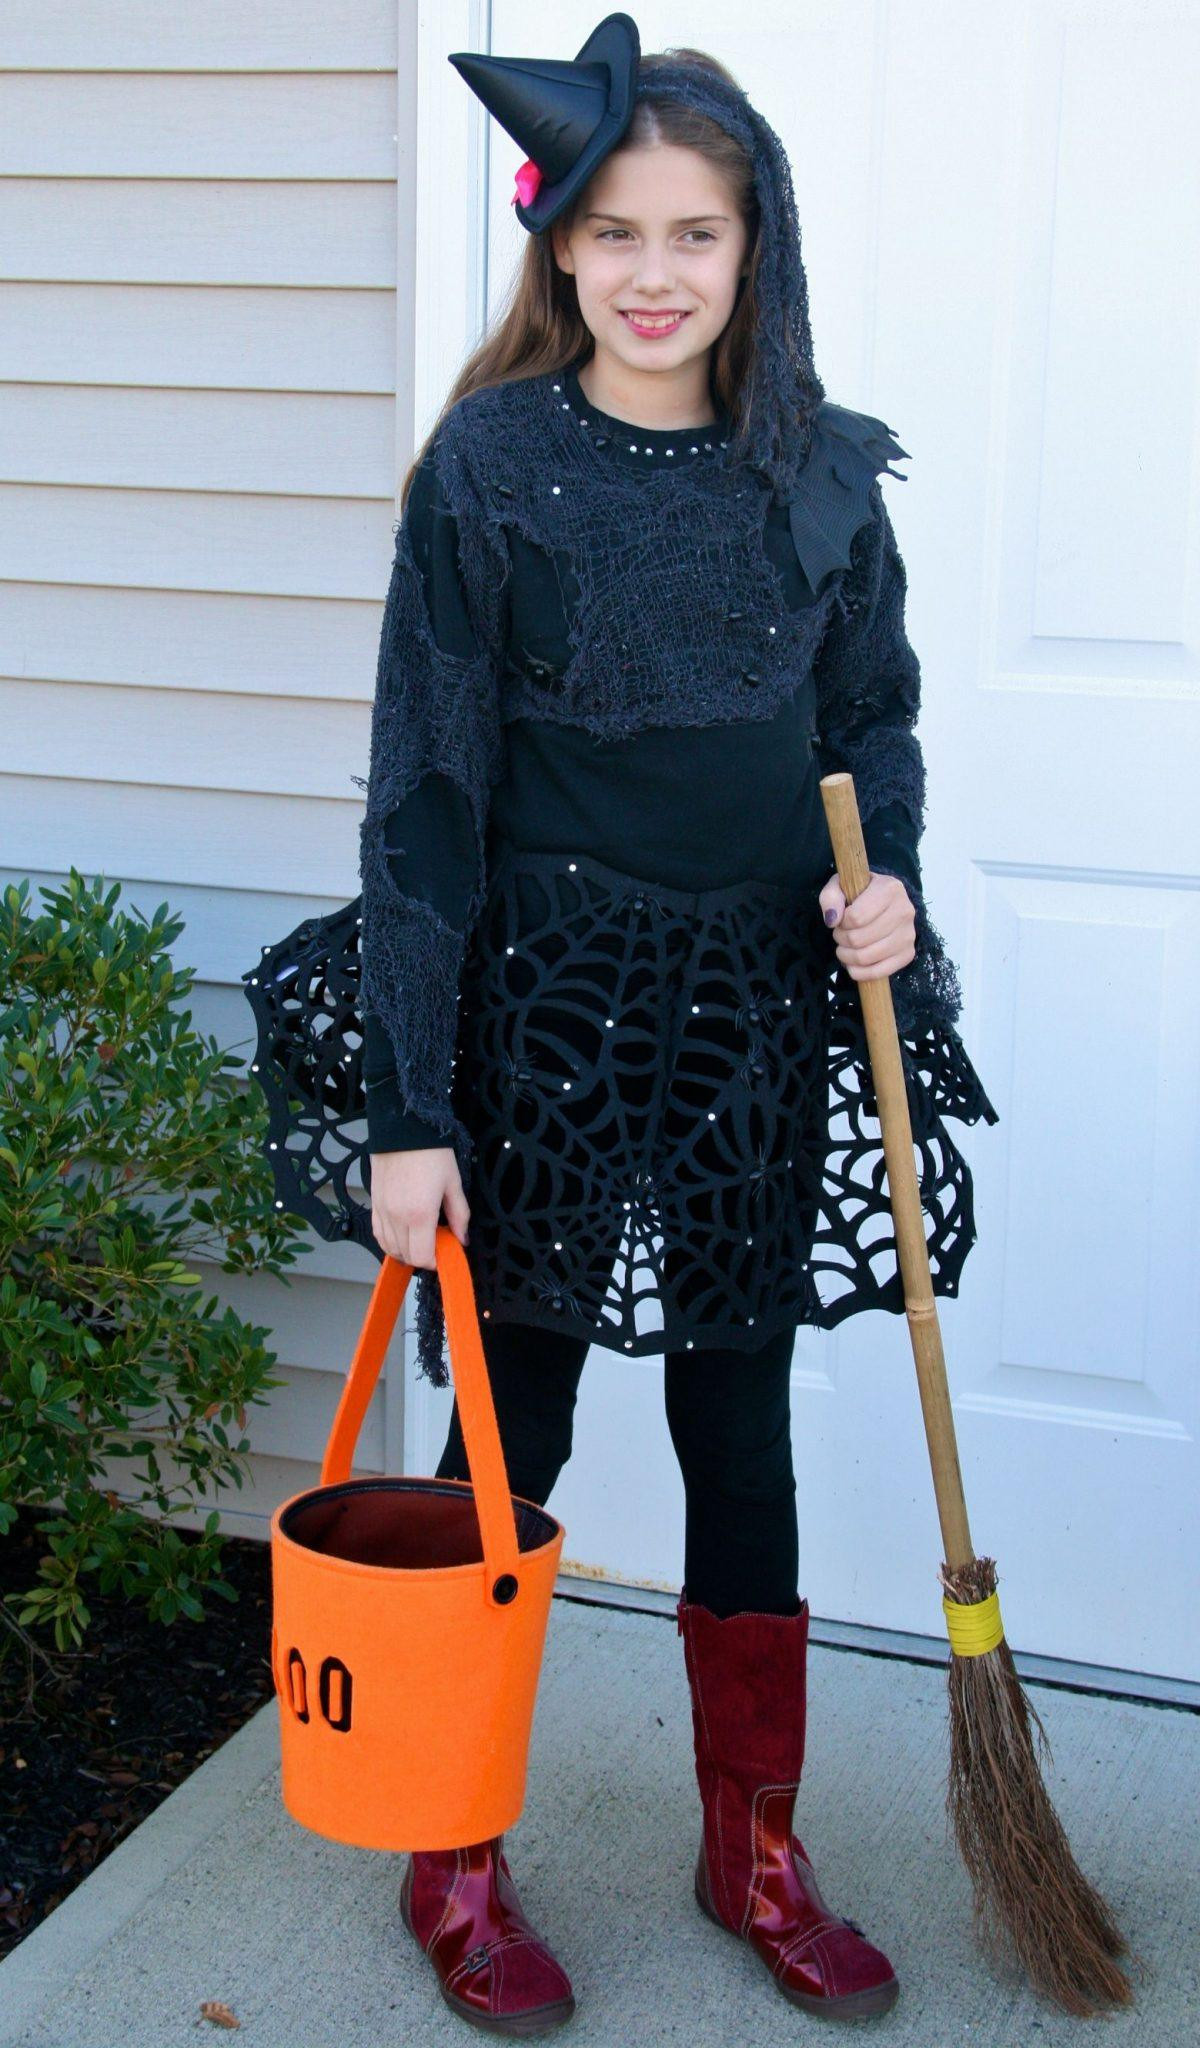 DIY Costumes For Tweens
 DIY Trendy Witch Costume for Tween Teen Girls